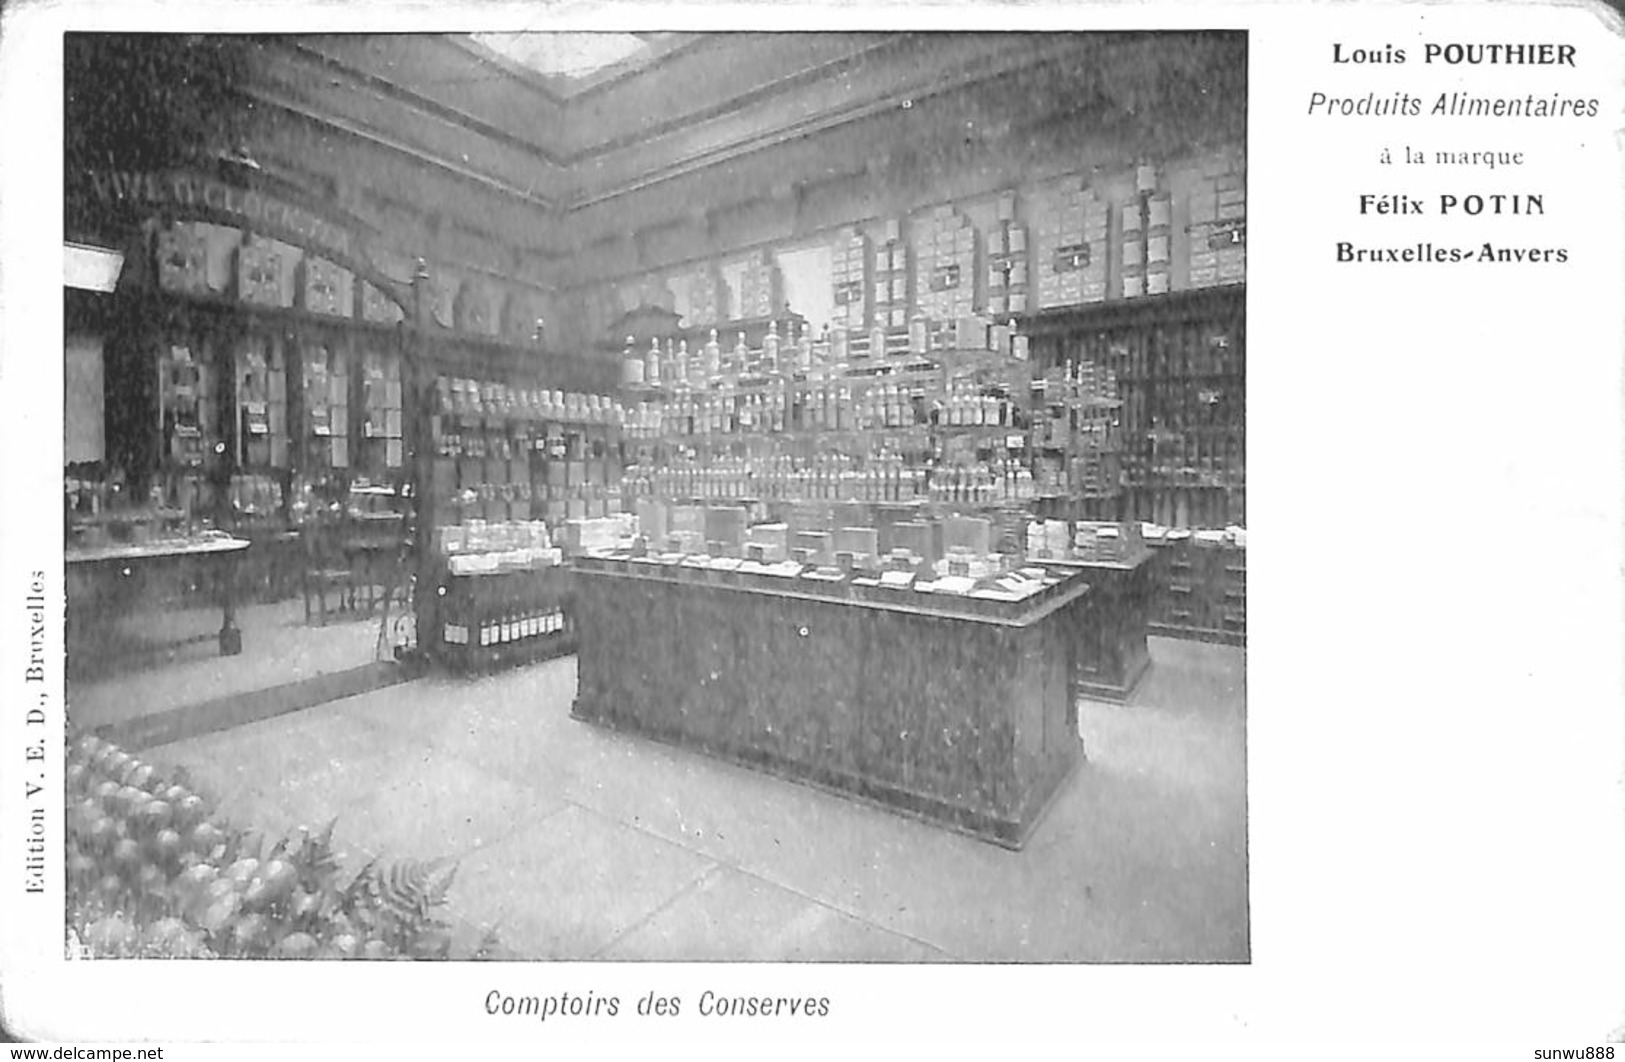 Comptoir Des Conserves - Louis Pouthier Produits Alimentaires (Edit. V E D Bruxelles Anvers) - Old Professions